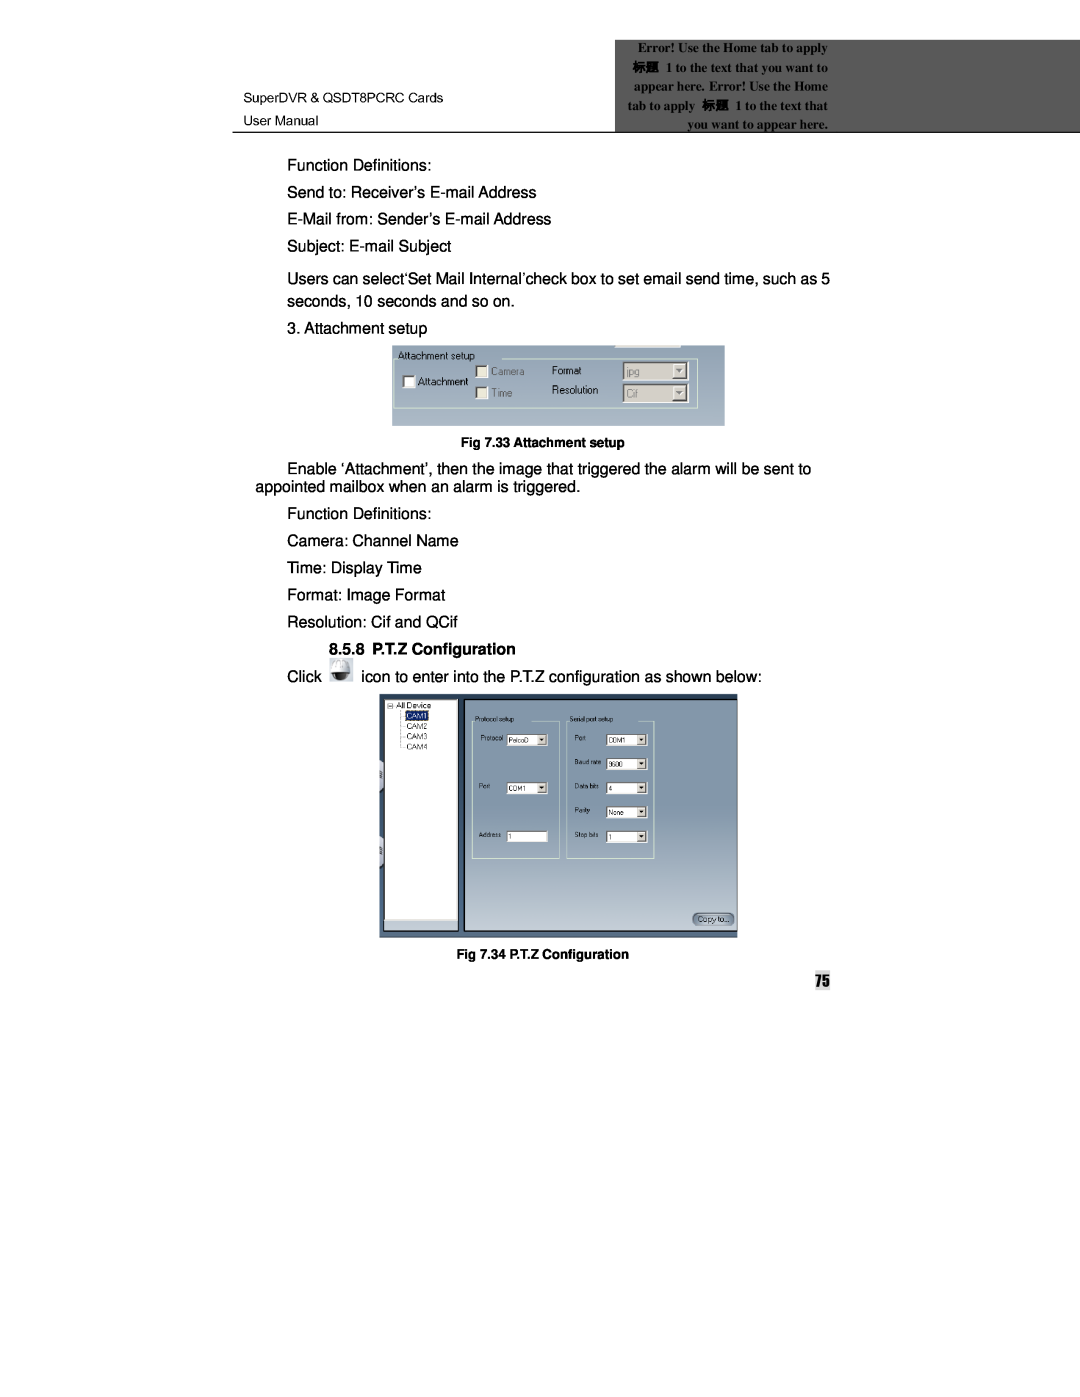 Q-See manual SuperDVR & QSDT8PCRC Cards, 8.5.8 P.T.Z Configuration 